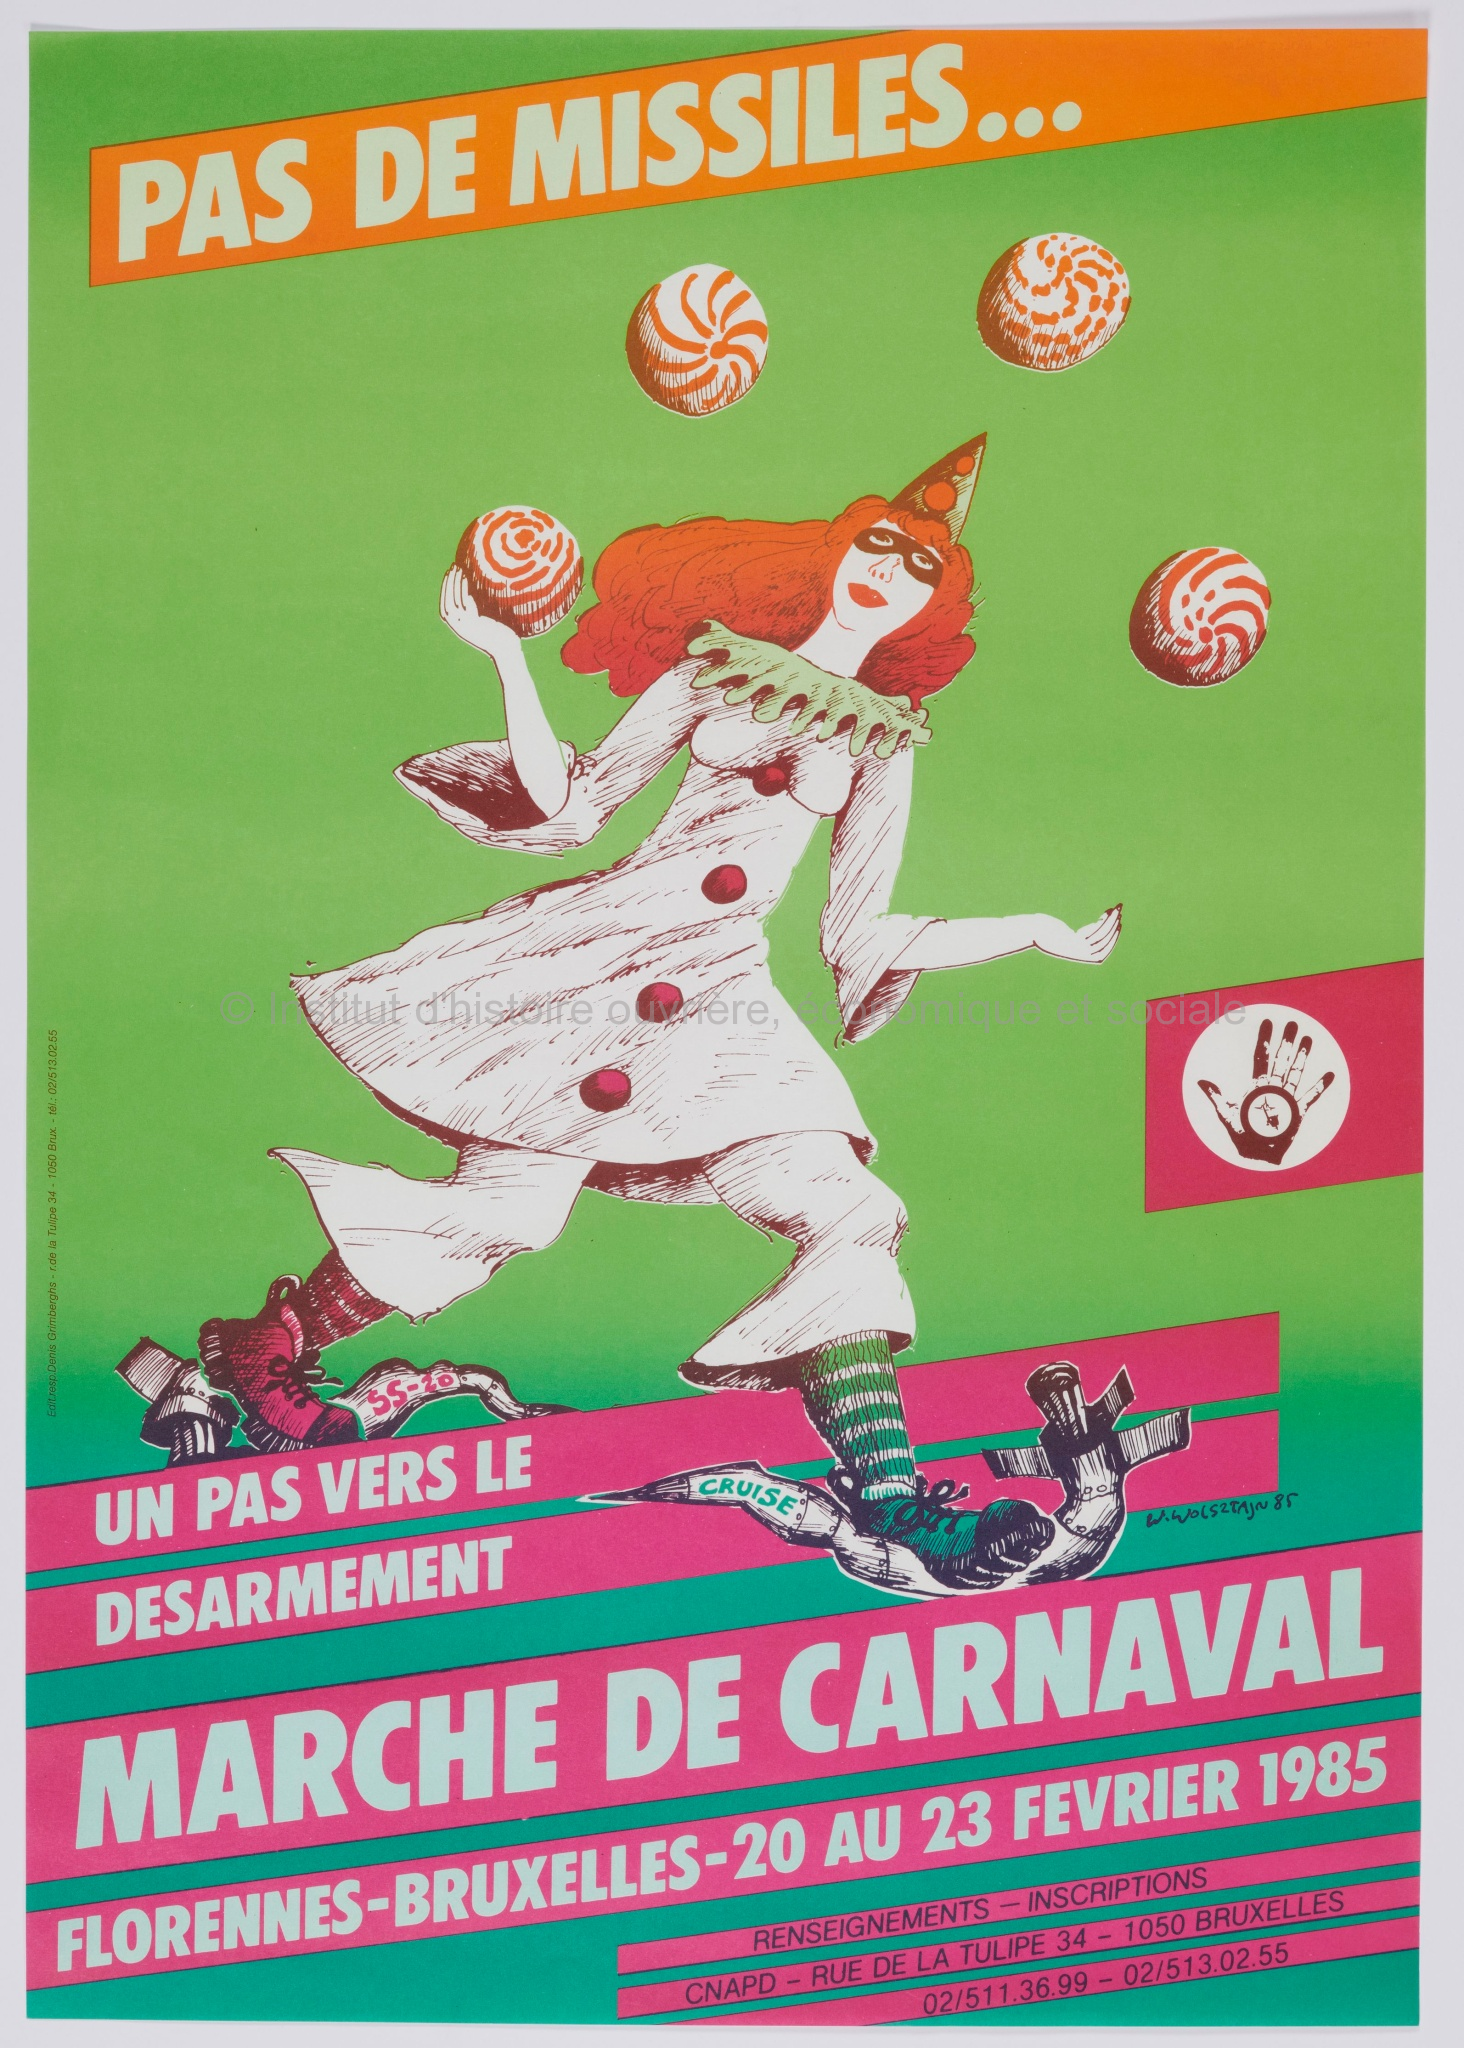 Pas de missiles ... : un pas vers le désarmement : marche de Carnaval, Florennes-Bruxelles, 20 au 23 février 1985